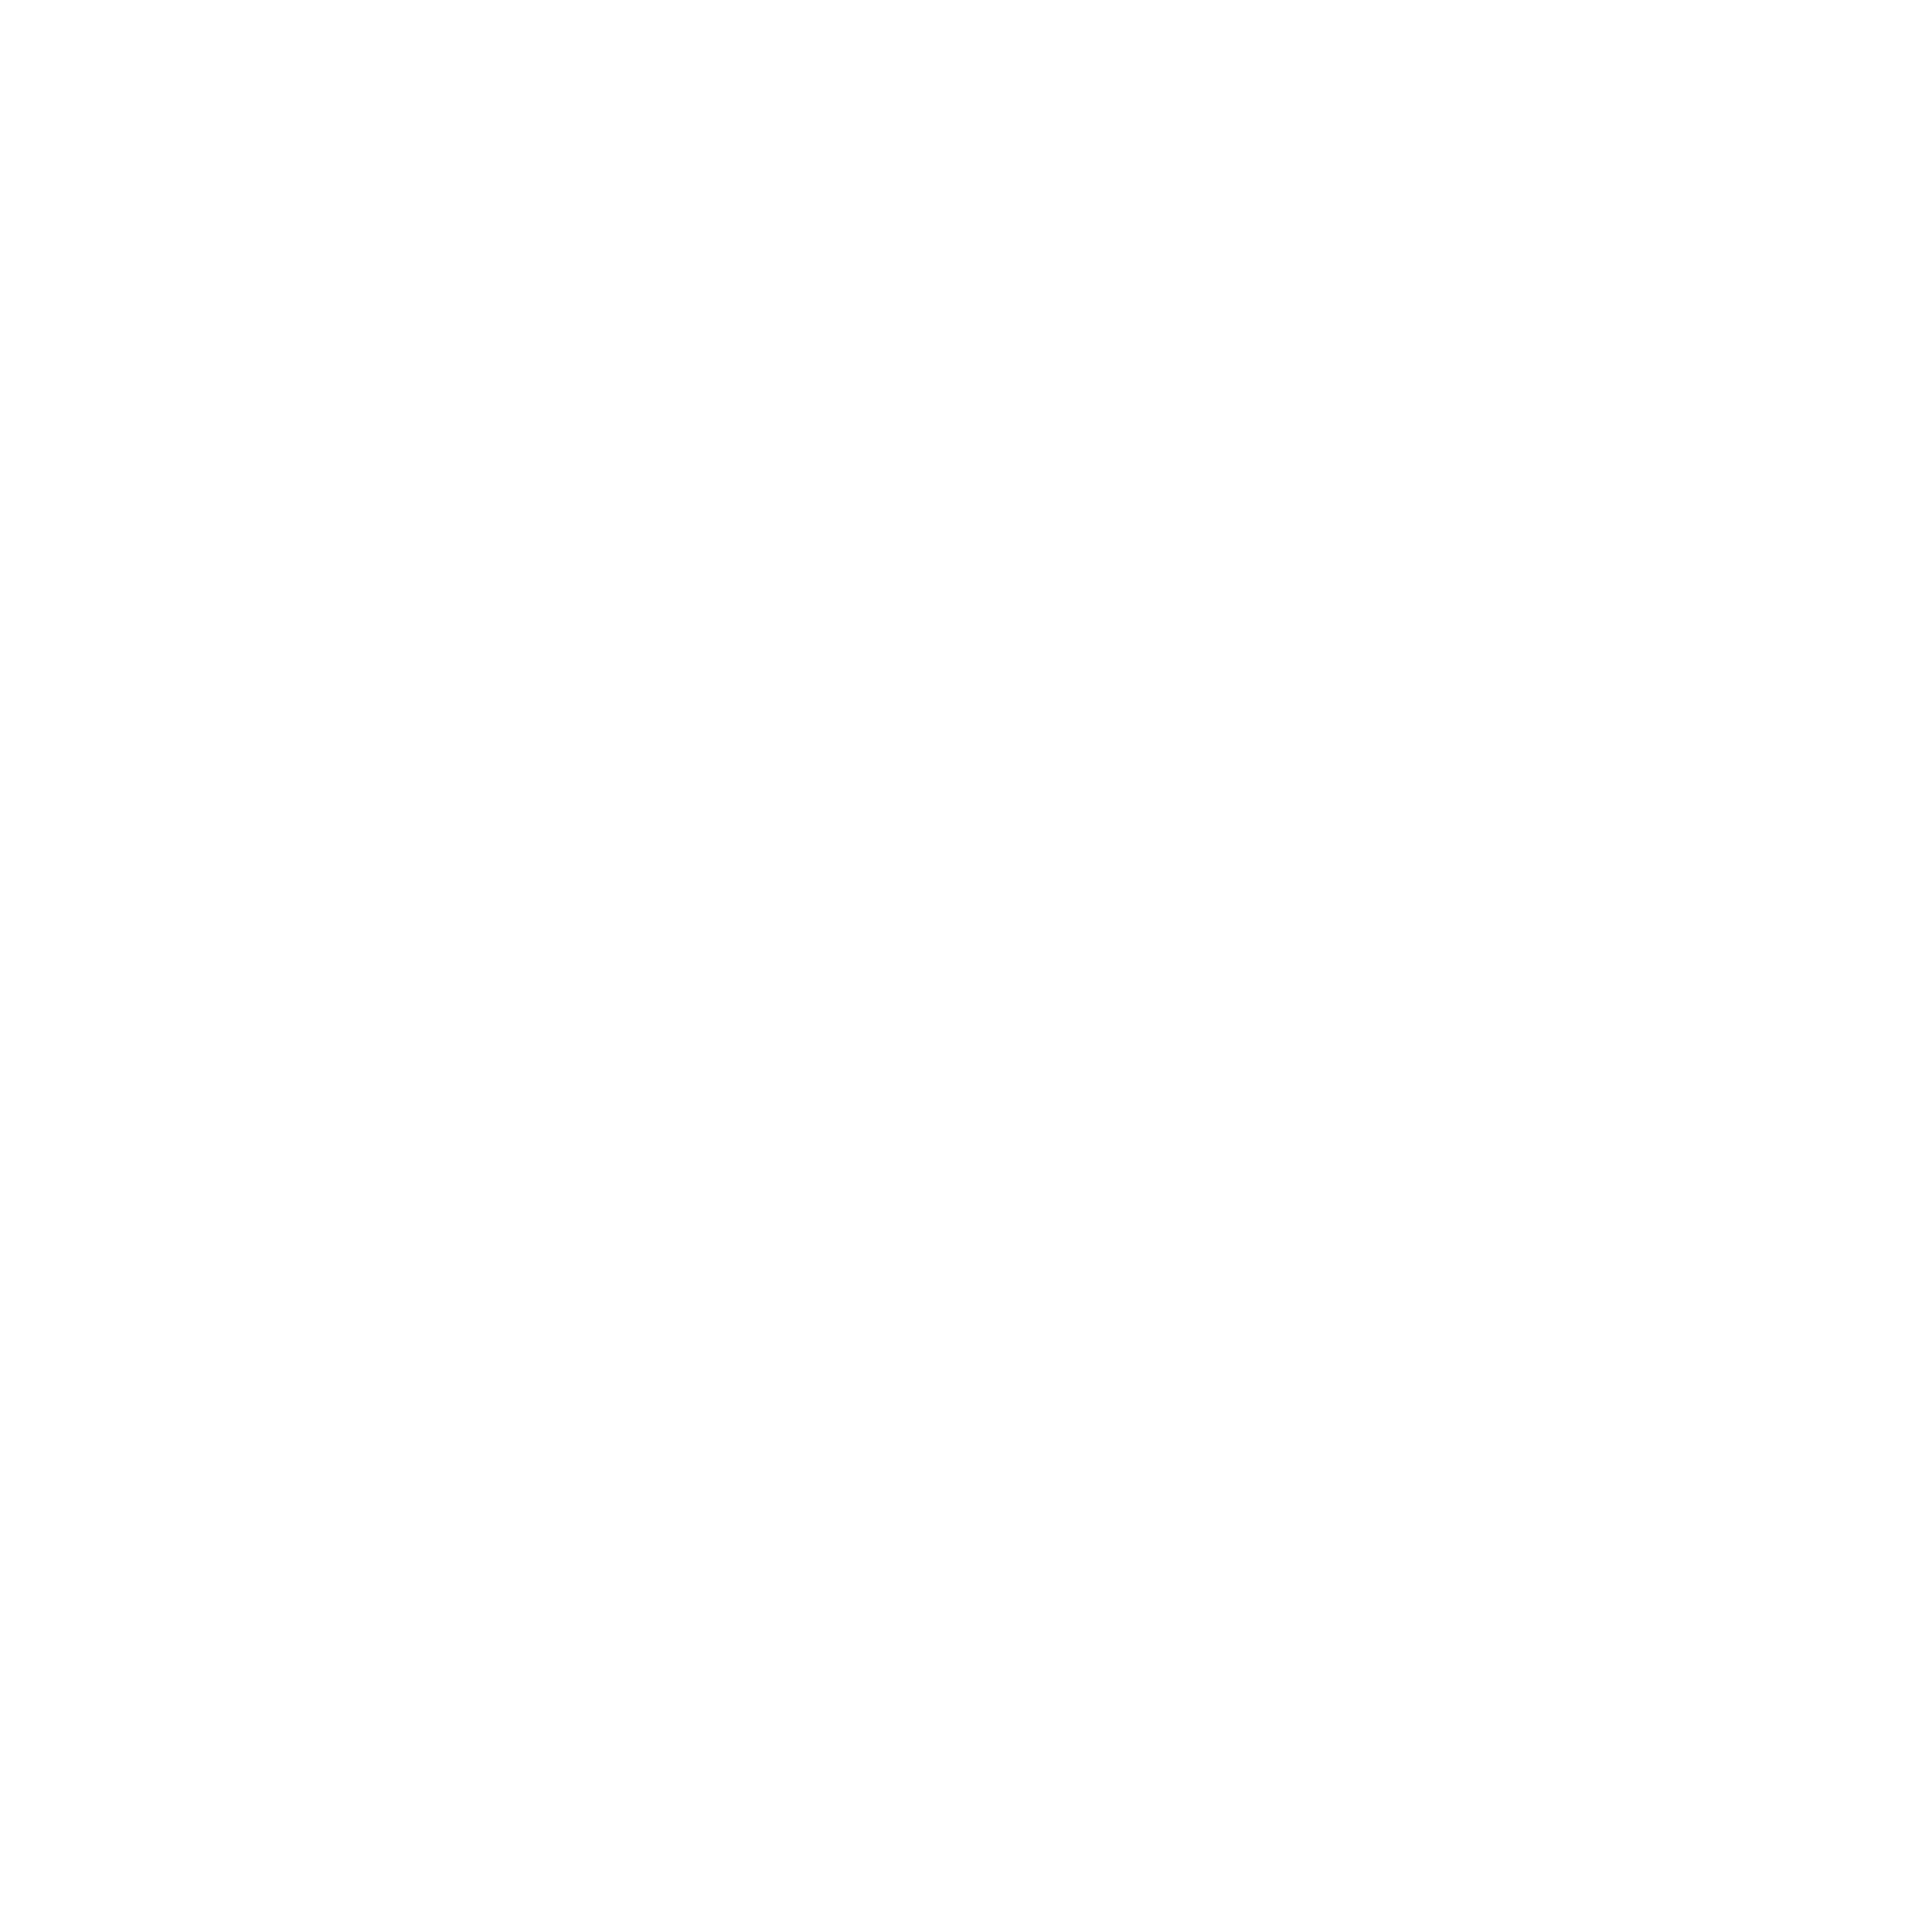 logo moshi moshi